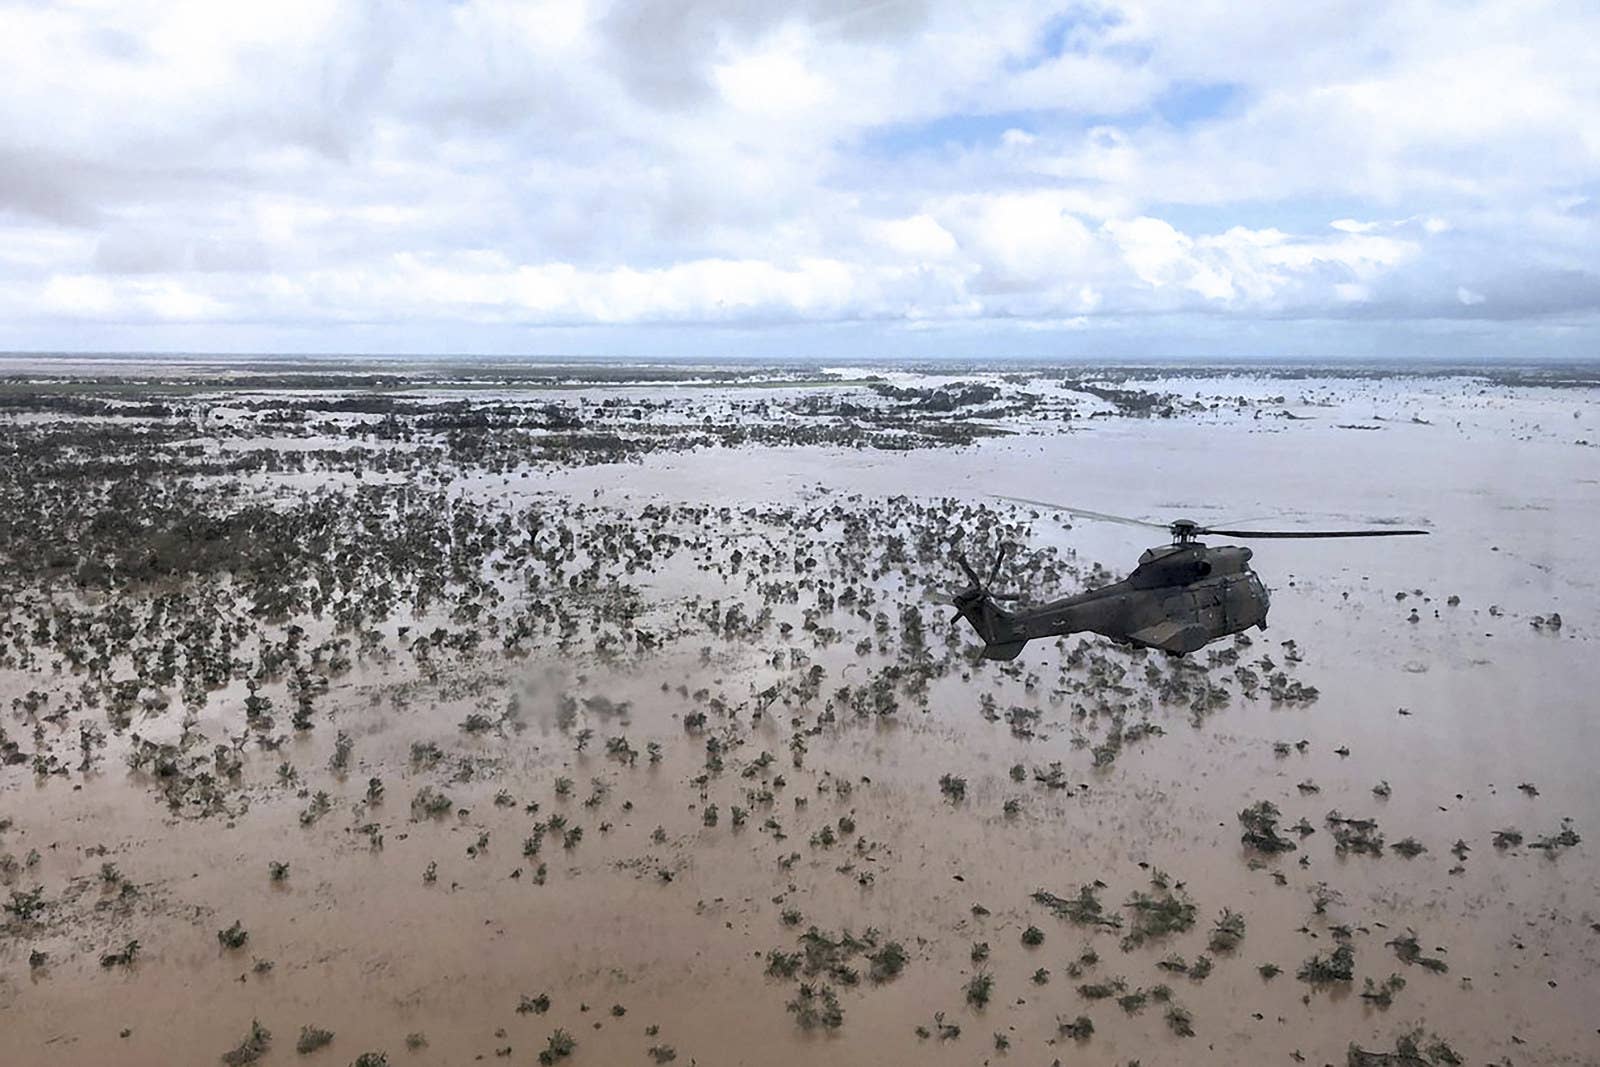 Helicóptero militar sobrevoa área alagada em Beira, no dia 20.